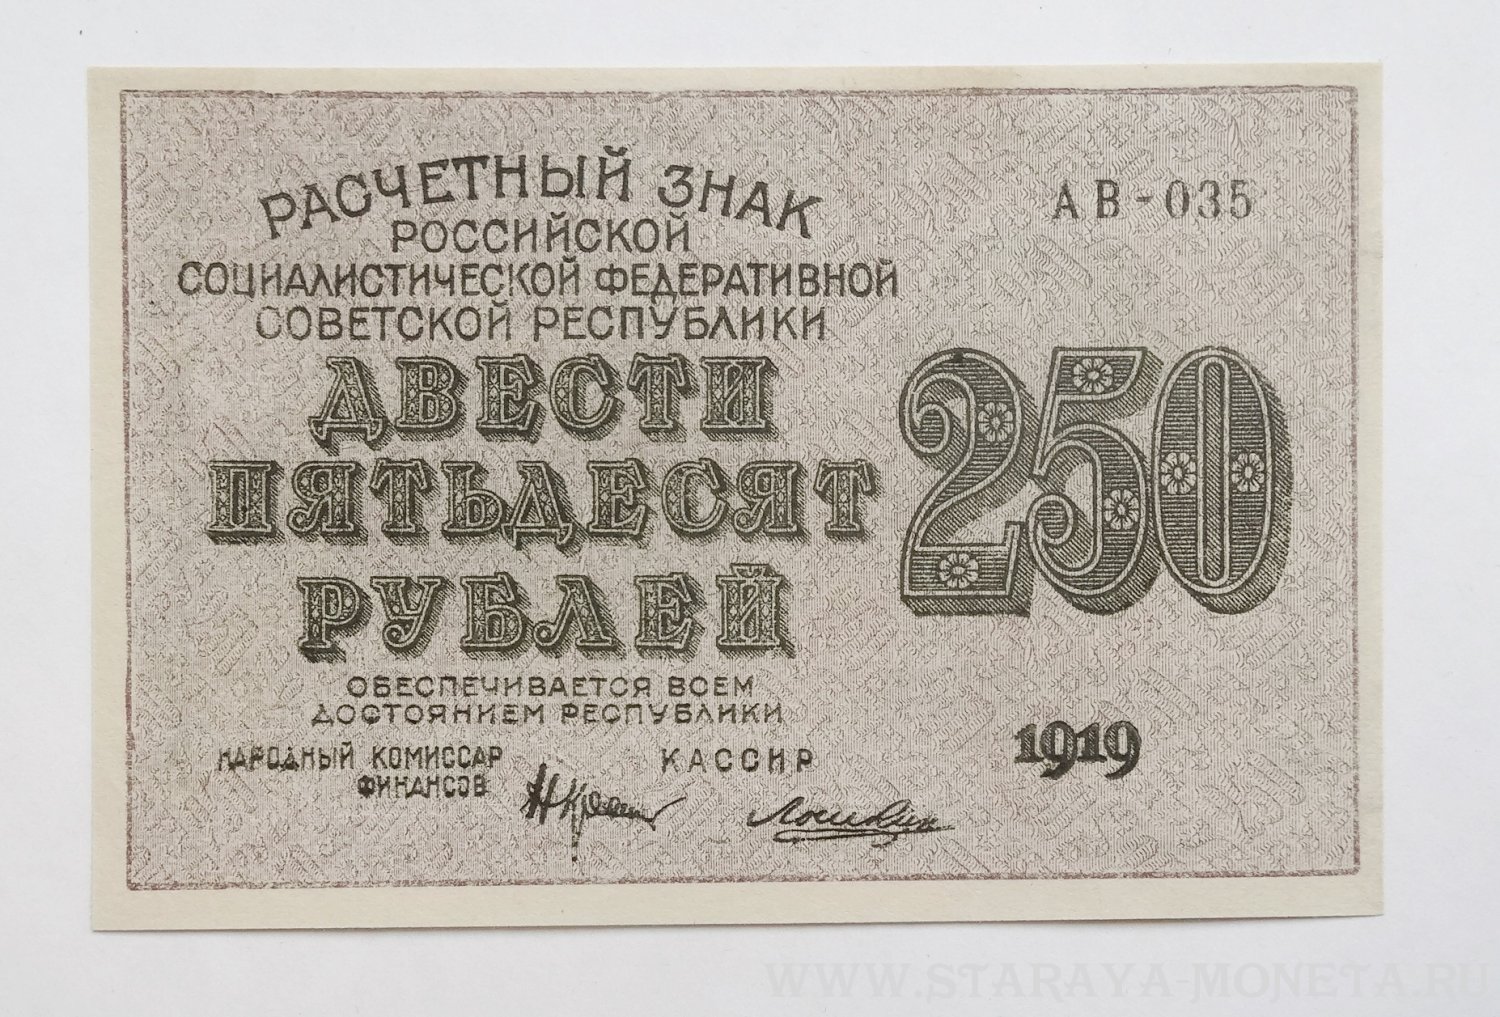 250 российских рублей